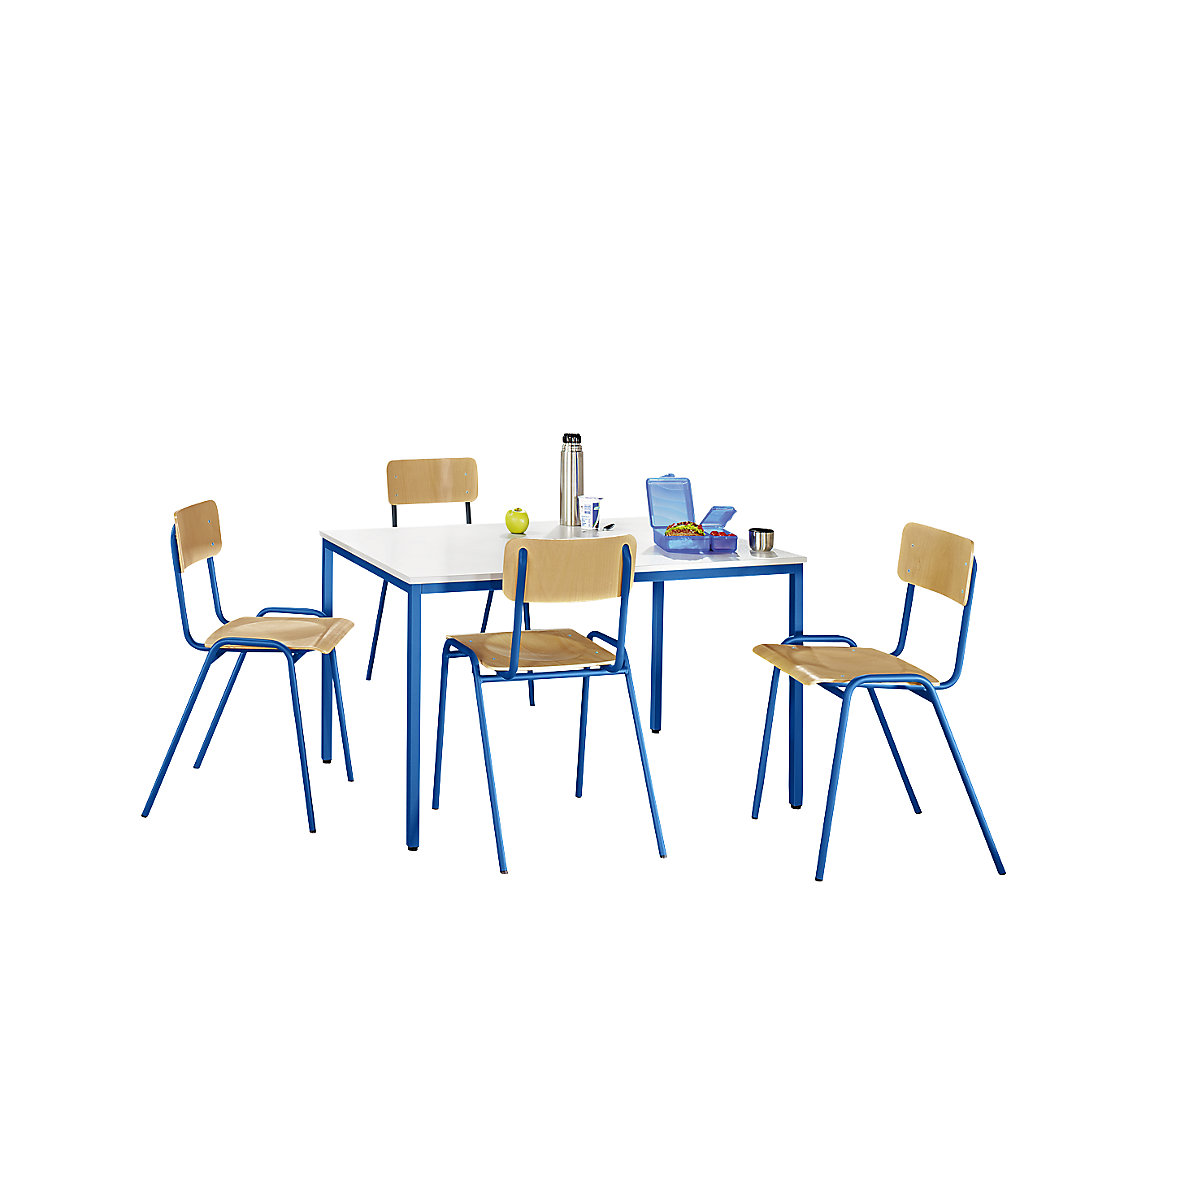 EUROKRAFTbasic Mehrzweck-Sitzgruppe, 1 Tisch, 4 Stühle, Tischplatte lichtgrau, Gestell enzianblau